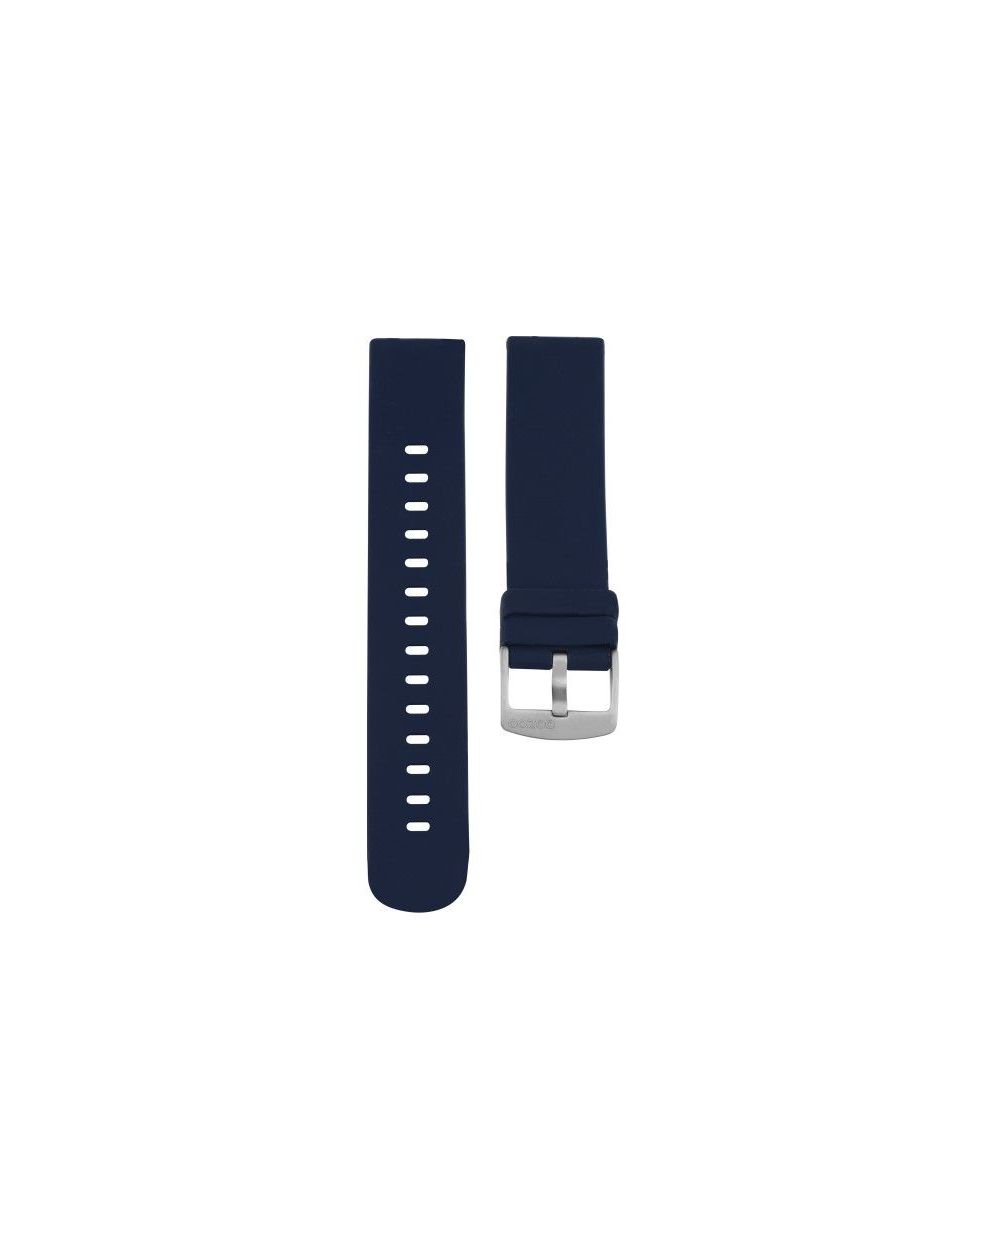 Bracelet montre connecté OOZOO caoutchouc bleu - 409.20 - Marque OOZOO